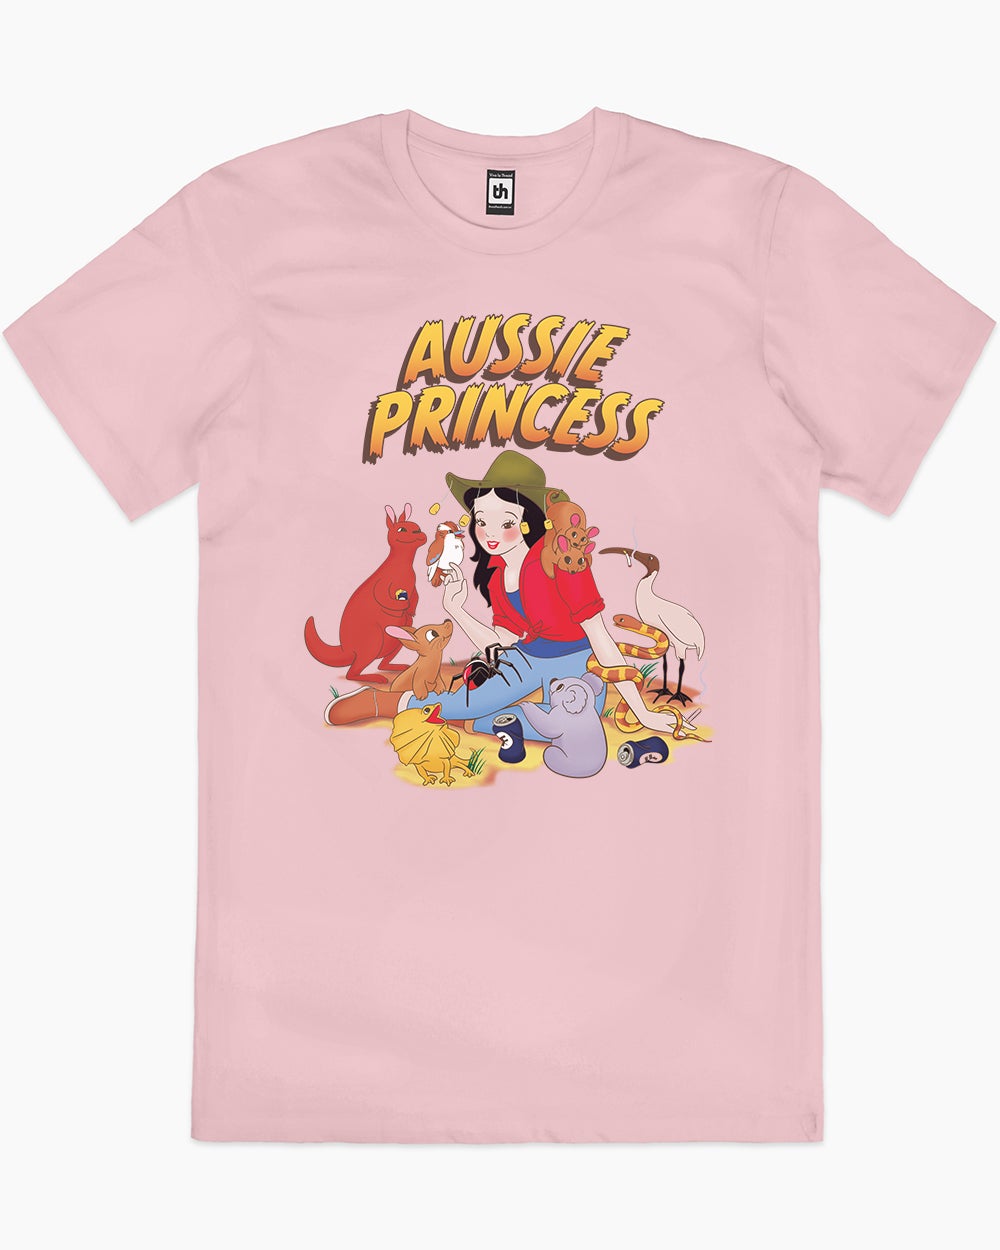 Aussie Princess T-Shirt Australia Online #colour_pink